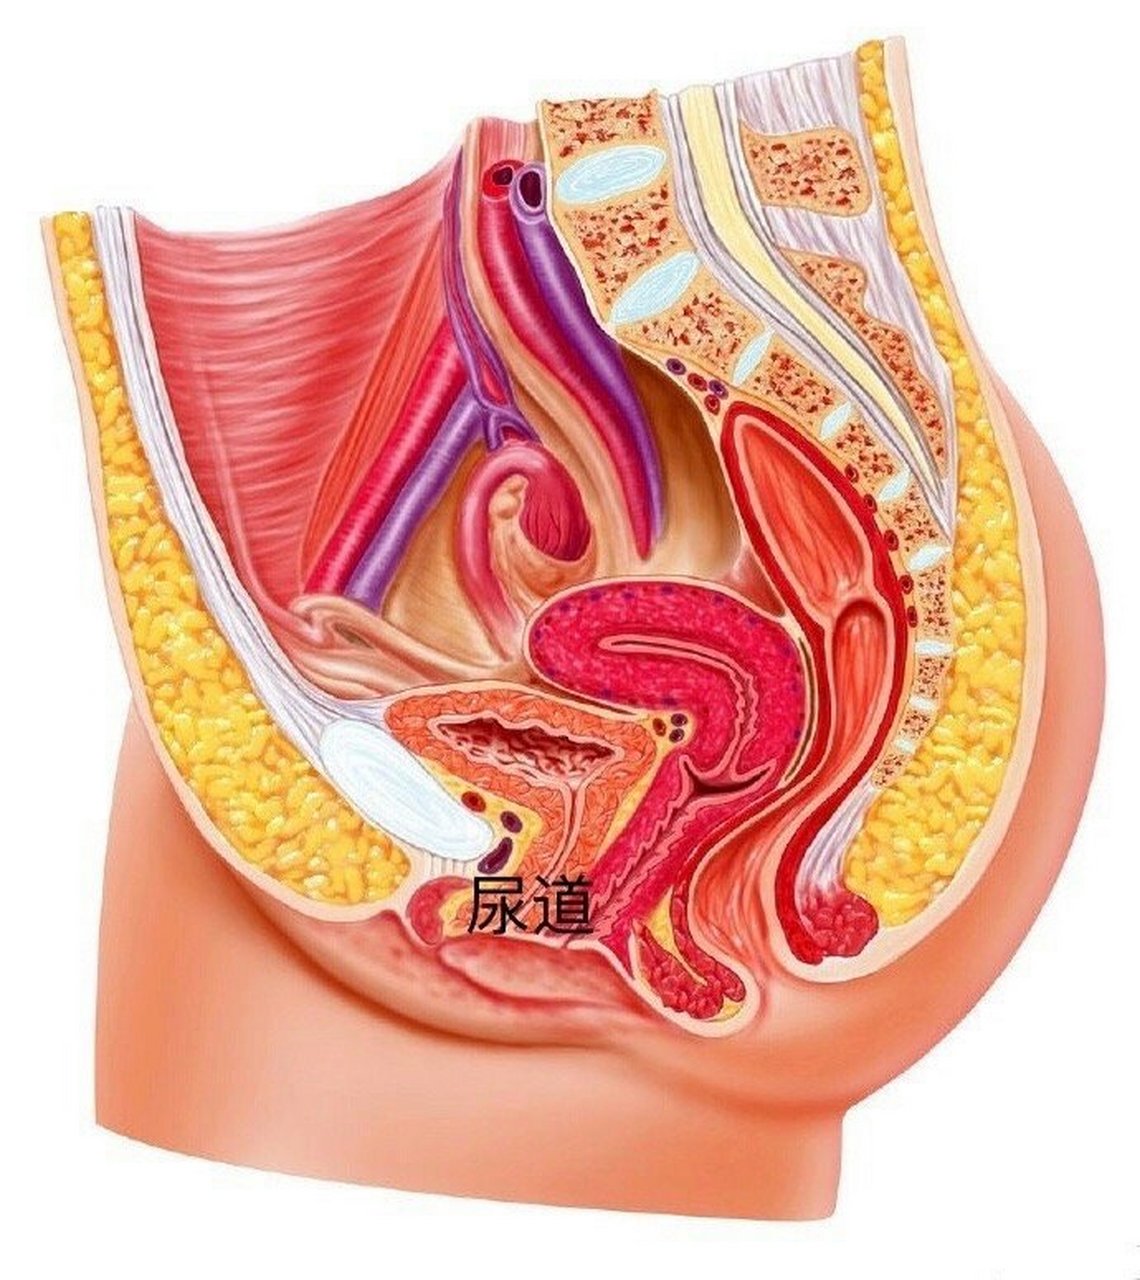 女生的尿道平均长3-5厘米(图1,比男生的尿道短,宽而直,很容易受到